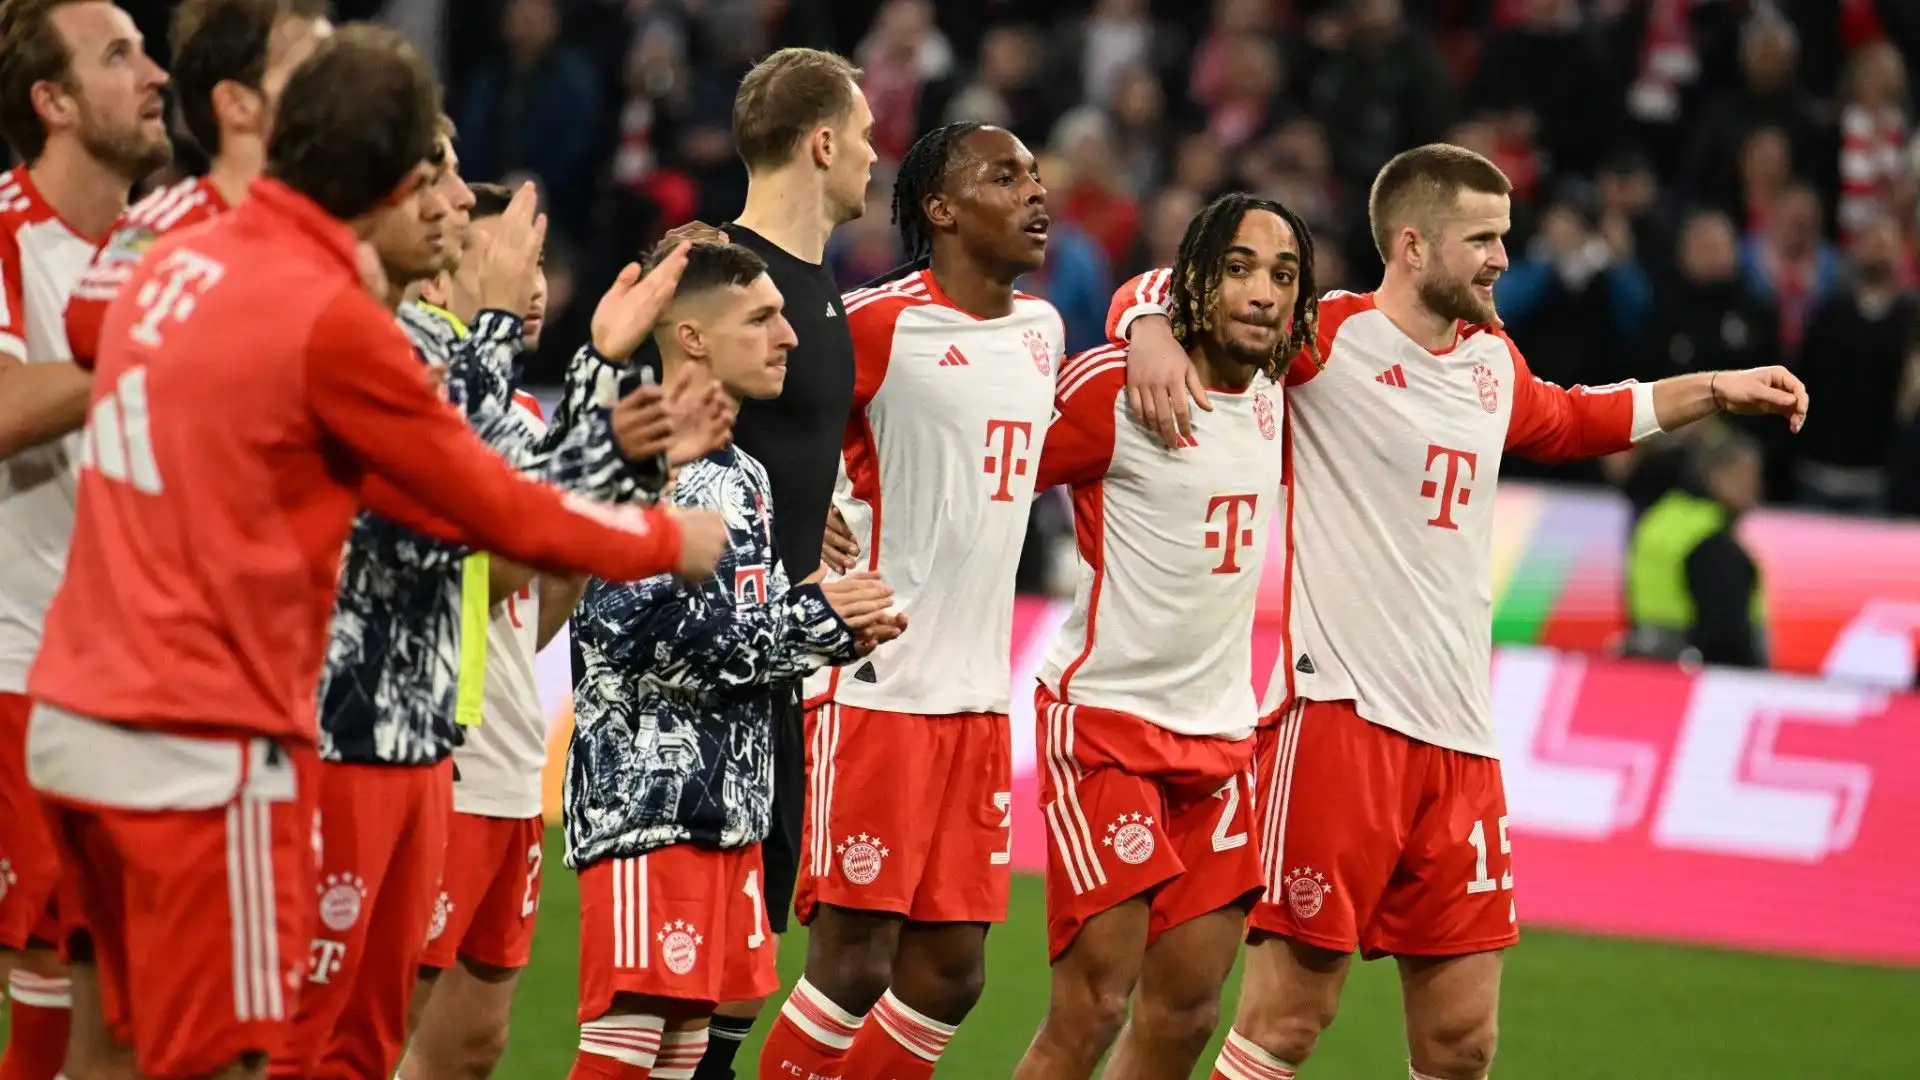 Tris del Bayern Monaco, a segno anche de Ligt. Le immagini